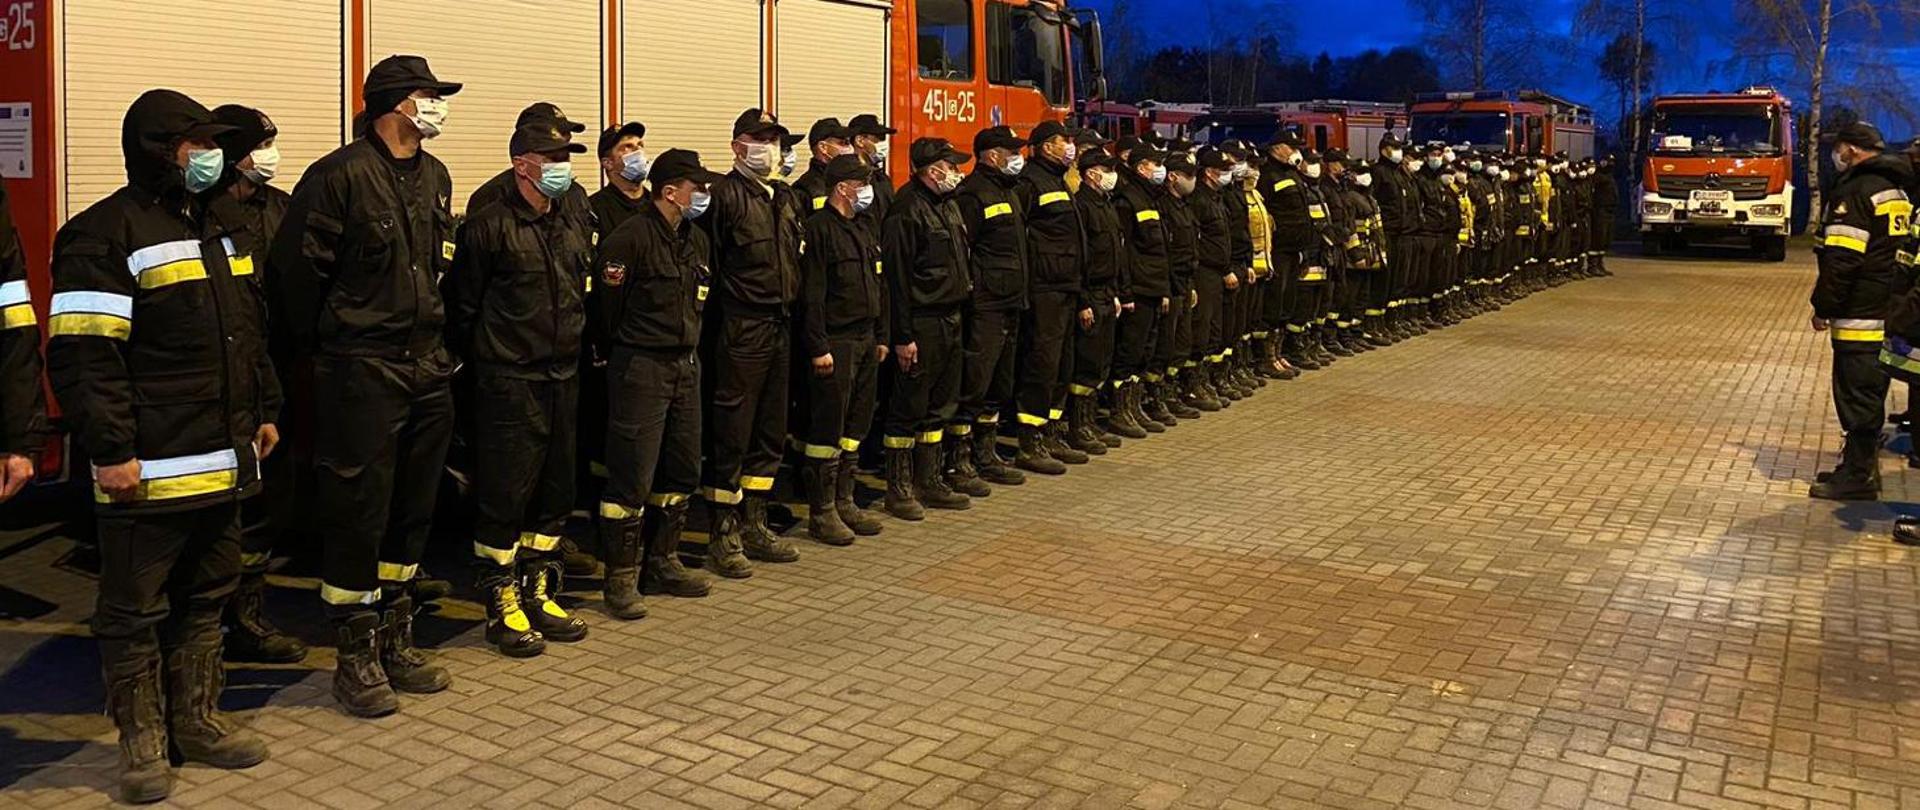 Strażacy w umundurowaniu koszarowym ustawieni w dwuszeregu podczas wieczornej odprawy przed ćwiczeniami na tle aut pożarniczych